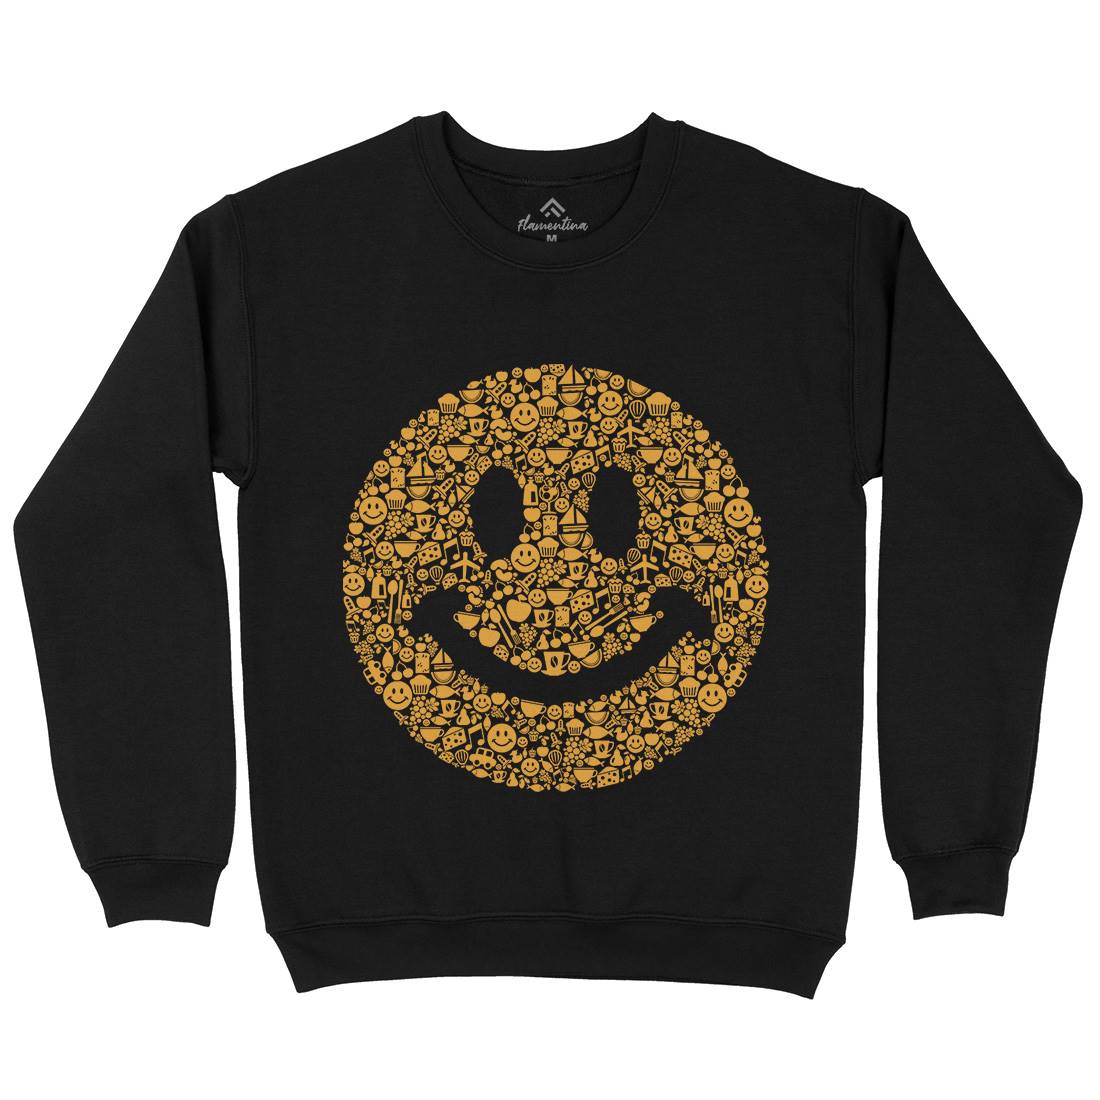 Smile Kids Crew Neck Sweatshirt Retro B080